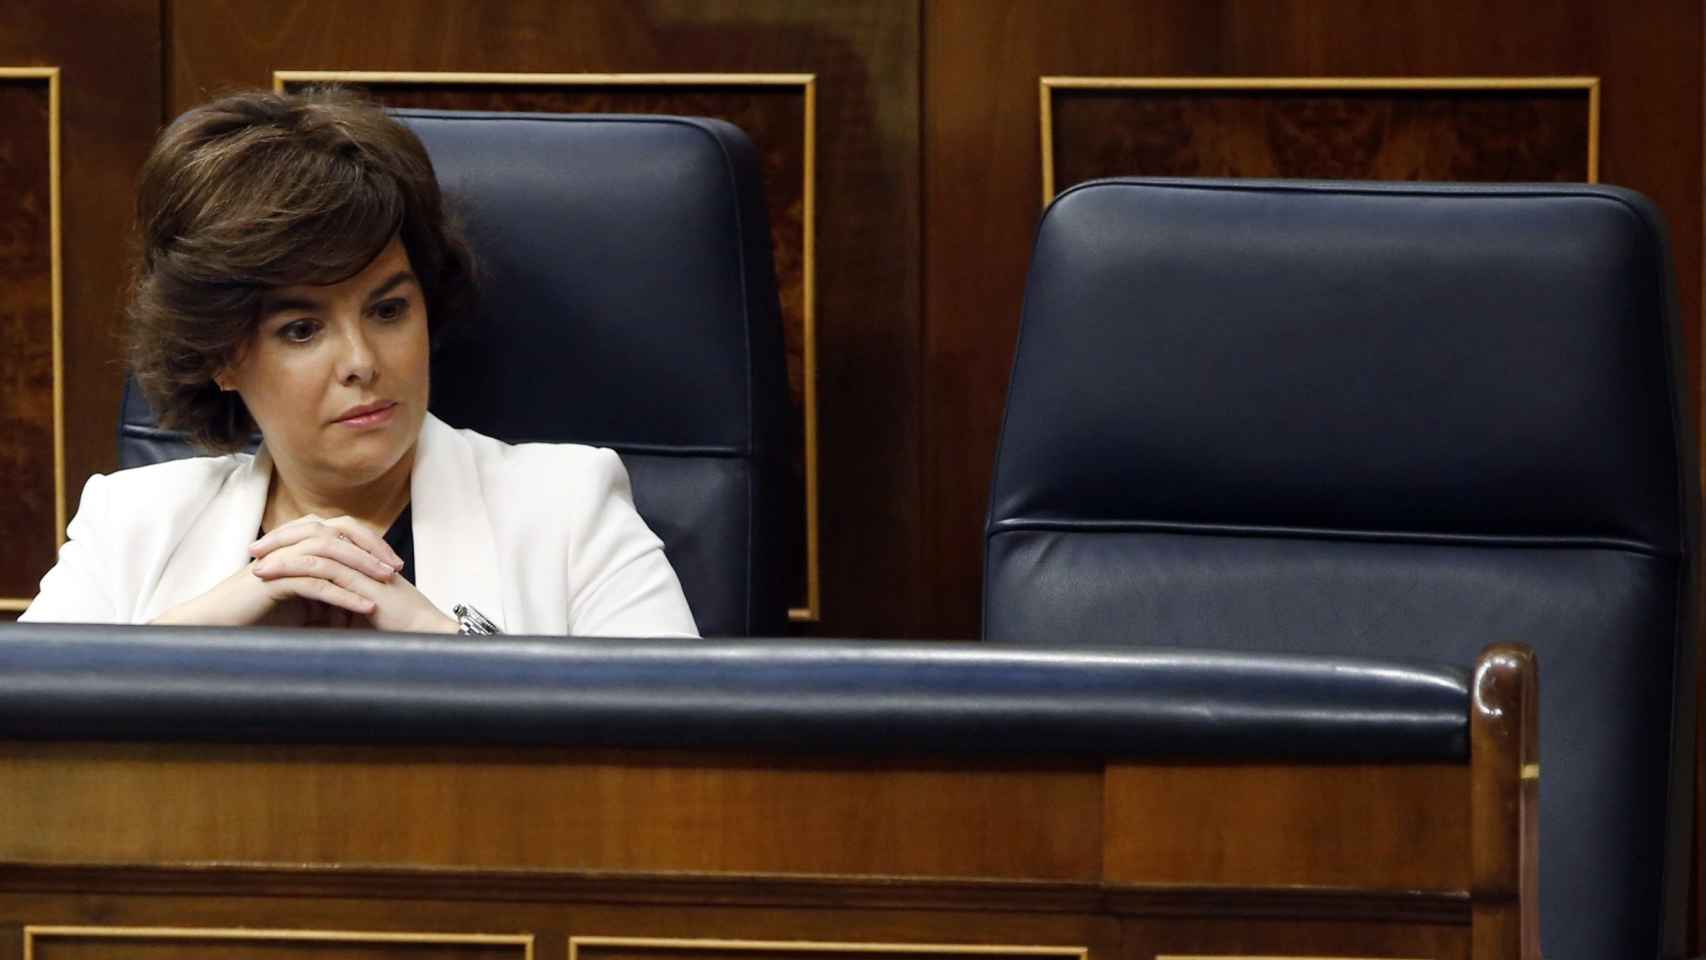 La vicepresidenta del Gobierno, Soraya Sáez de Santamaría, con el asiento vacío de Rajoy.